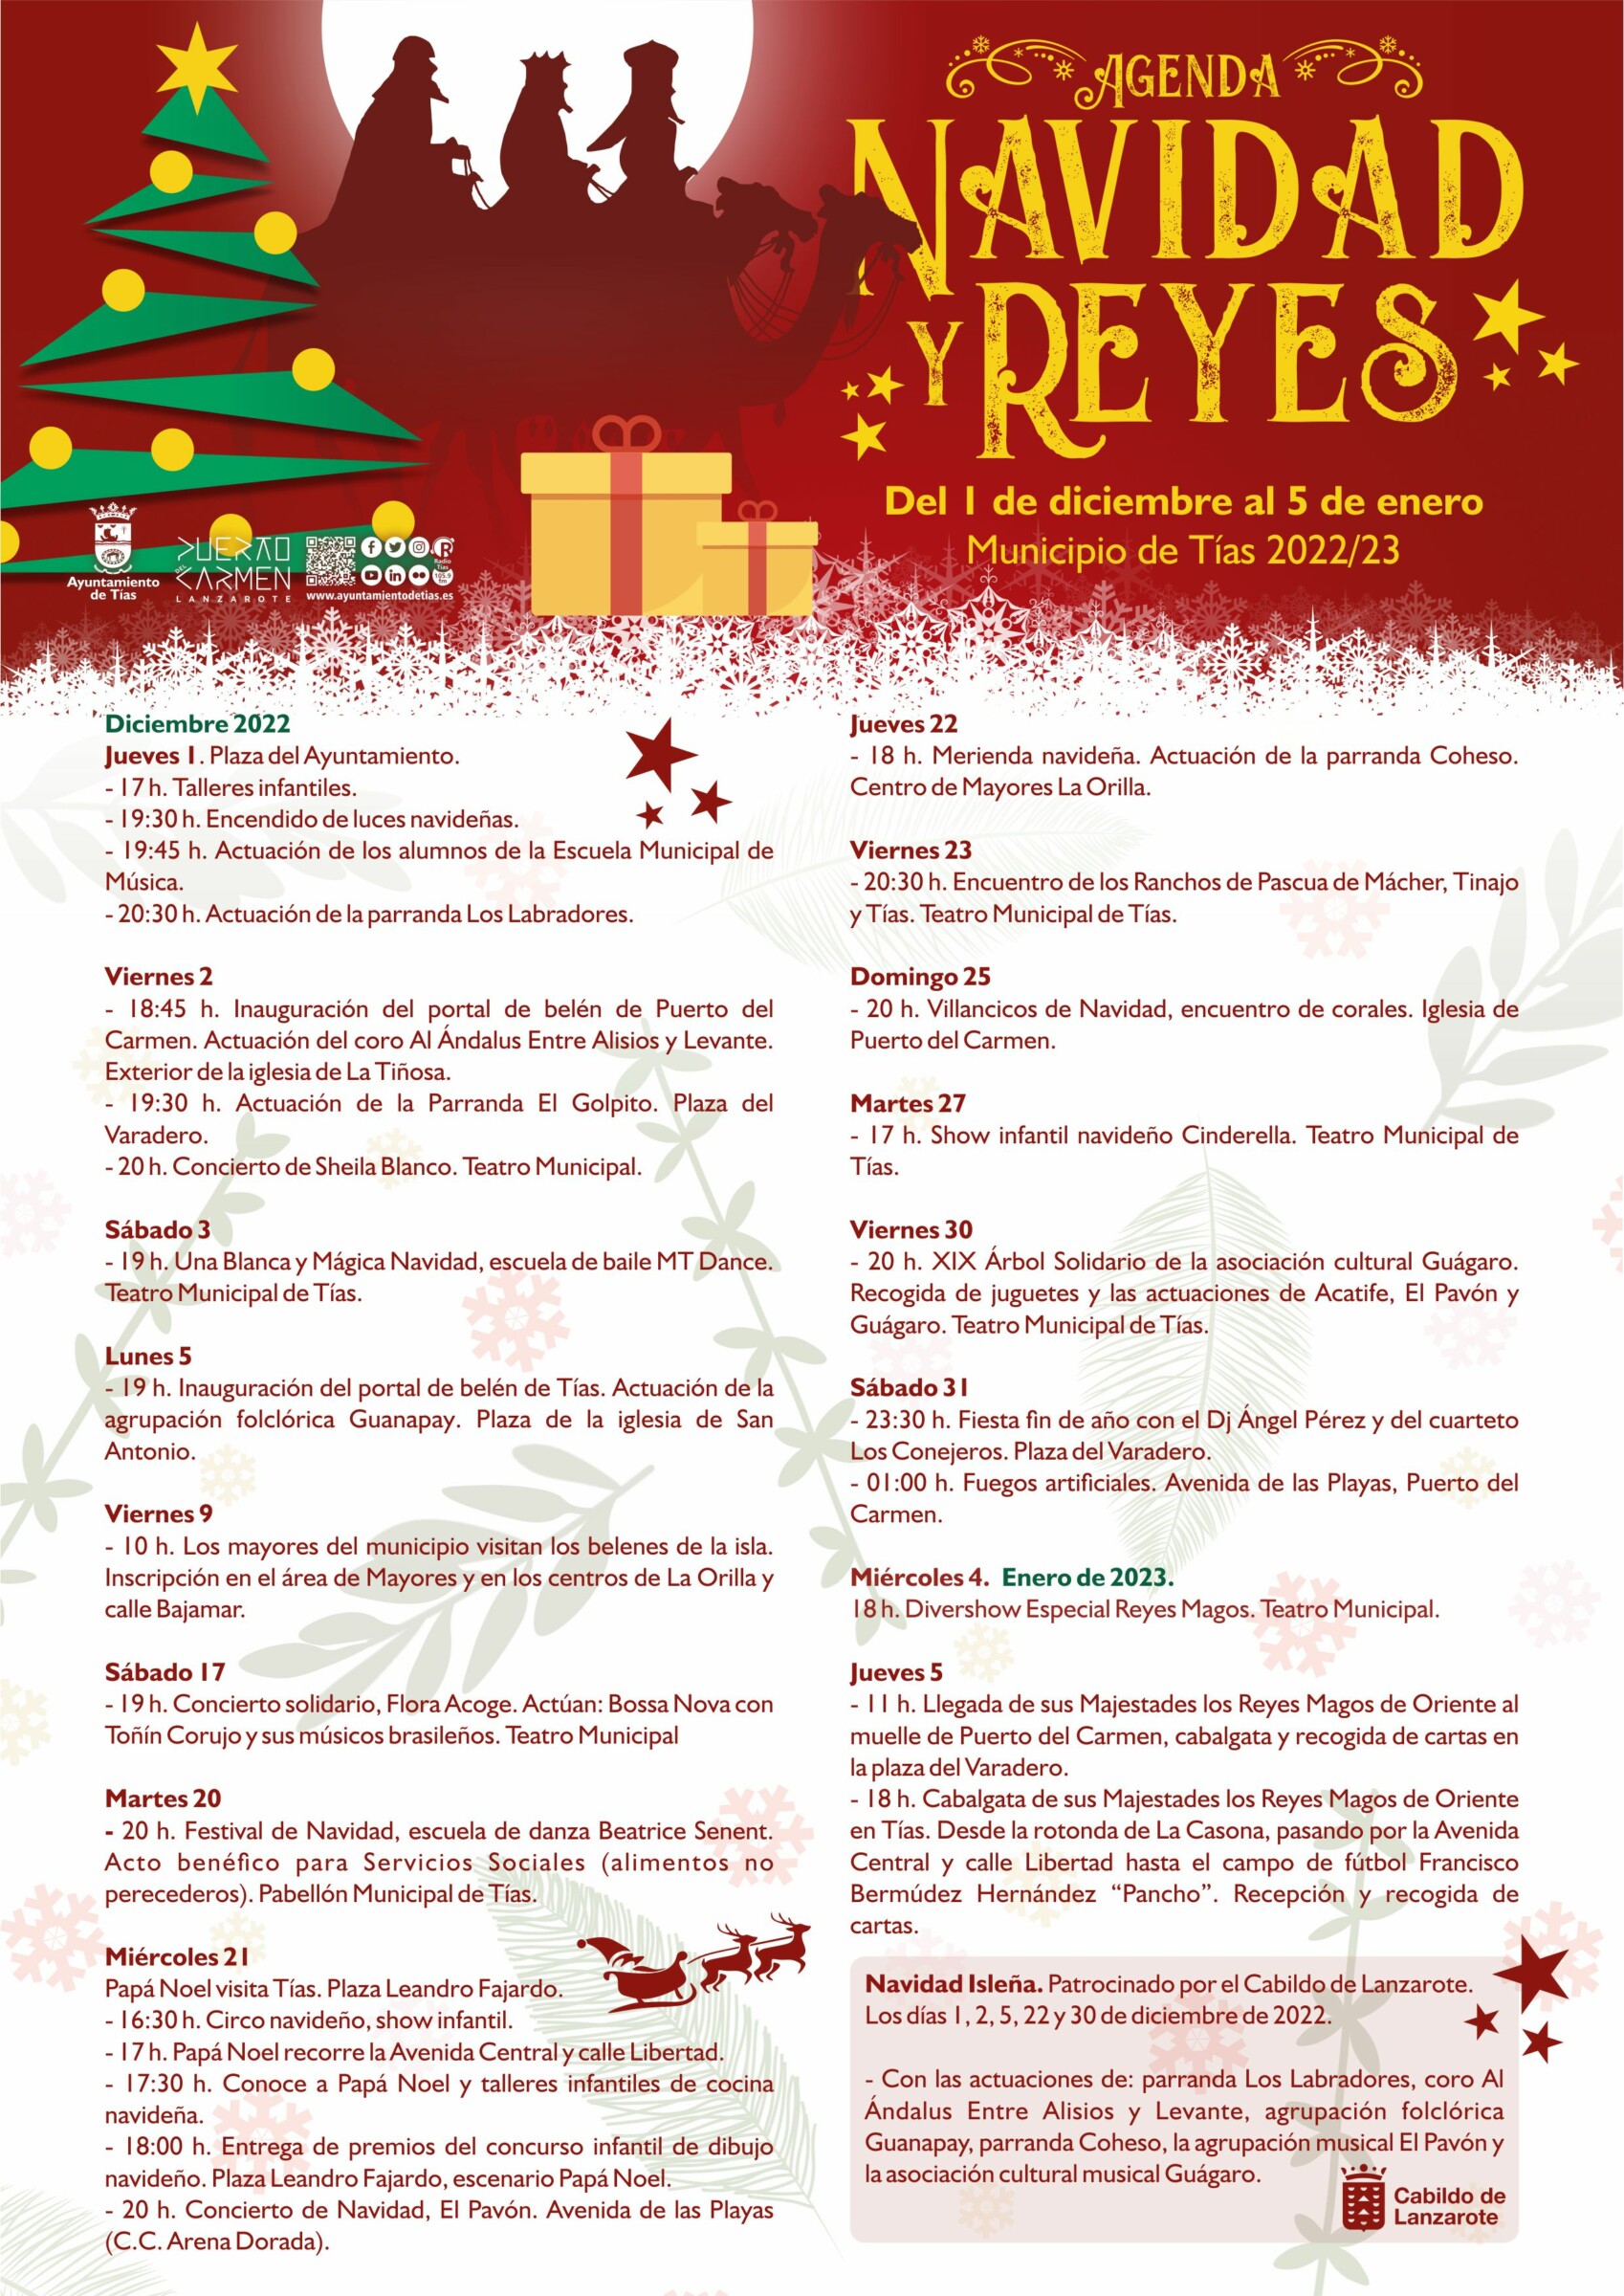 Tías presenta su agenda de Navidad y Reyes, que comienza el 1 de diciembre con el encendido de luces